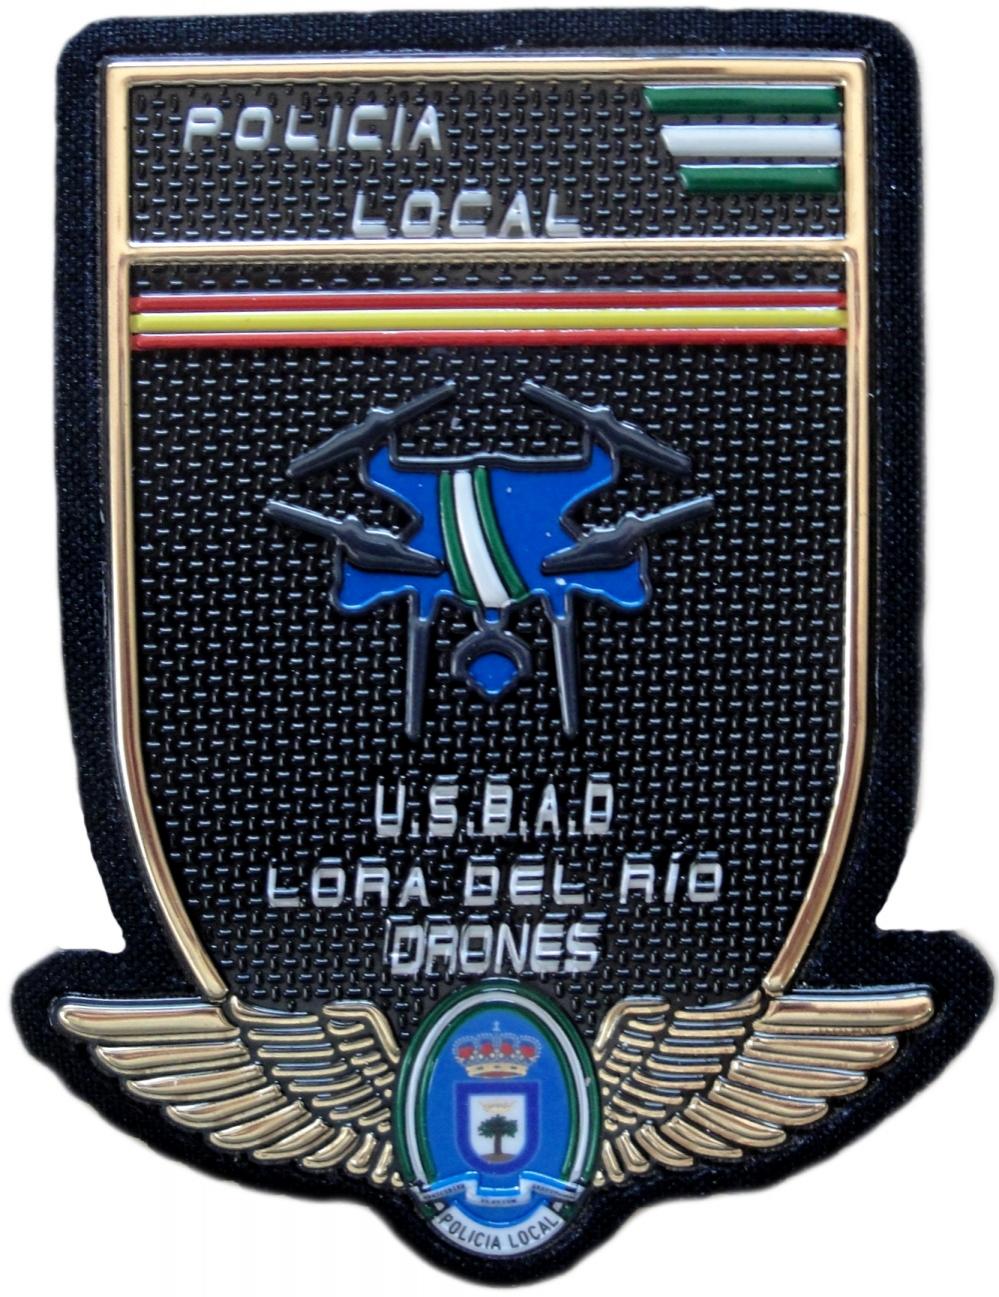 Policía Local Lora del Rio USBAD drones parche insignia emblema distintivo